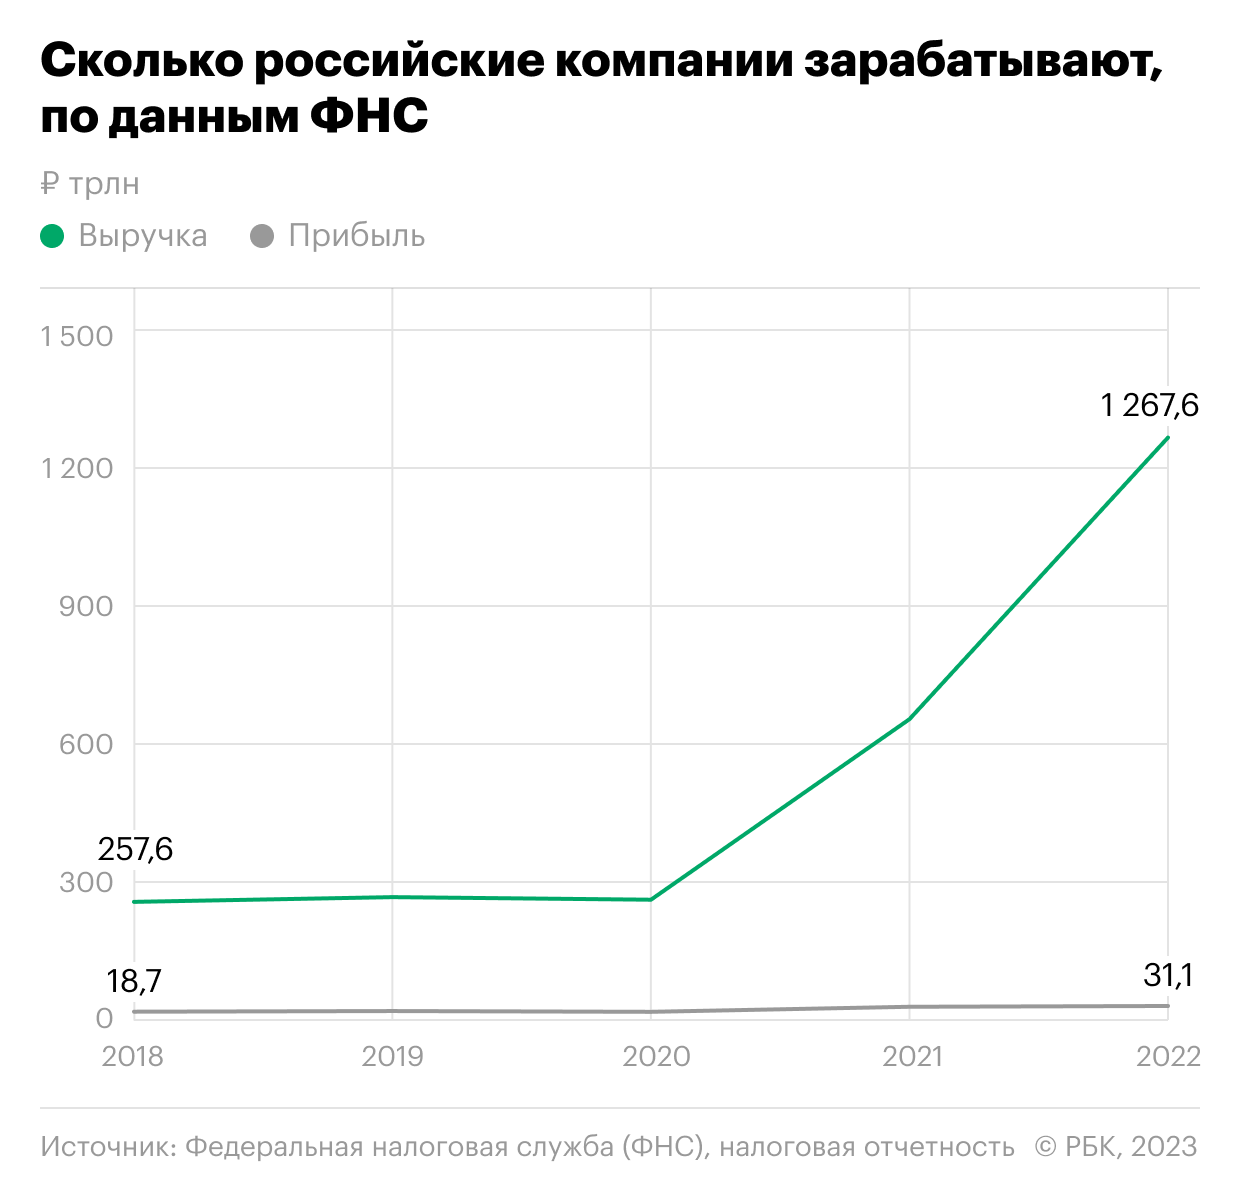 Как компании в России заявили о выручке больше квадриллиона. Инфографика